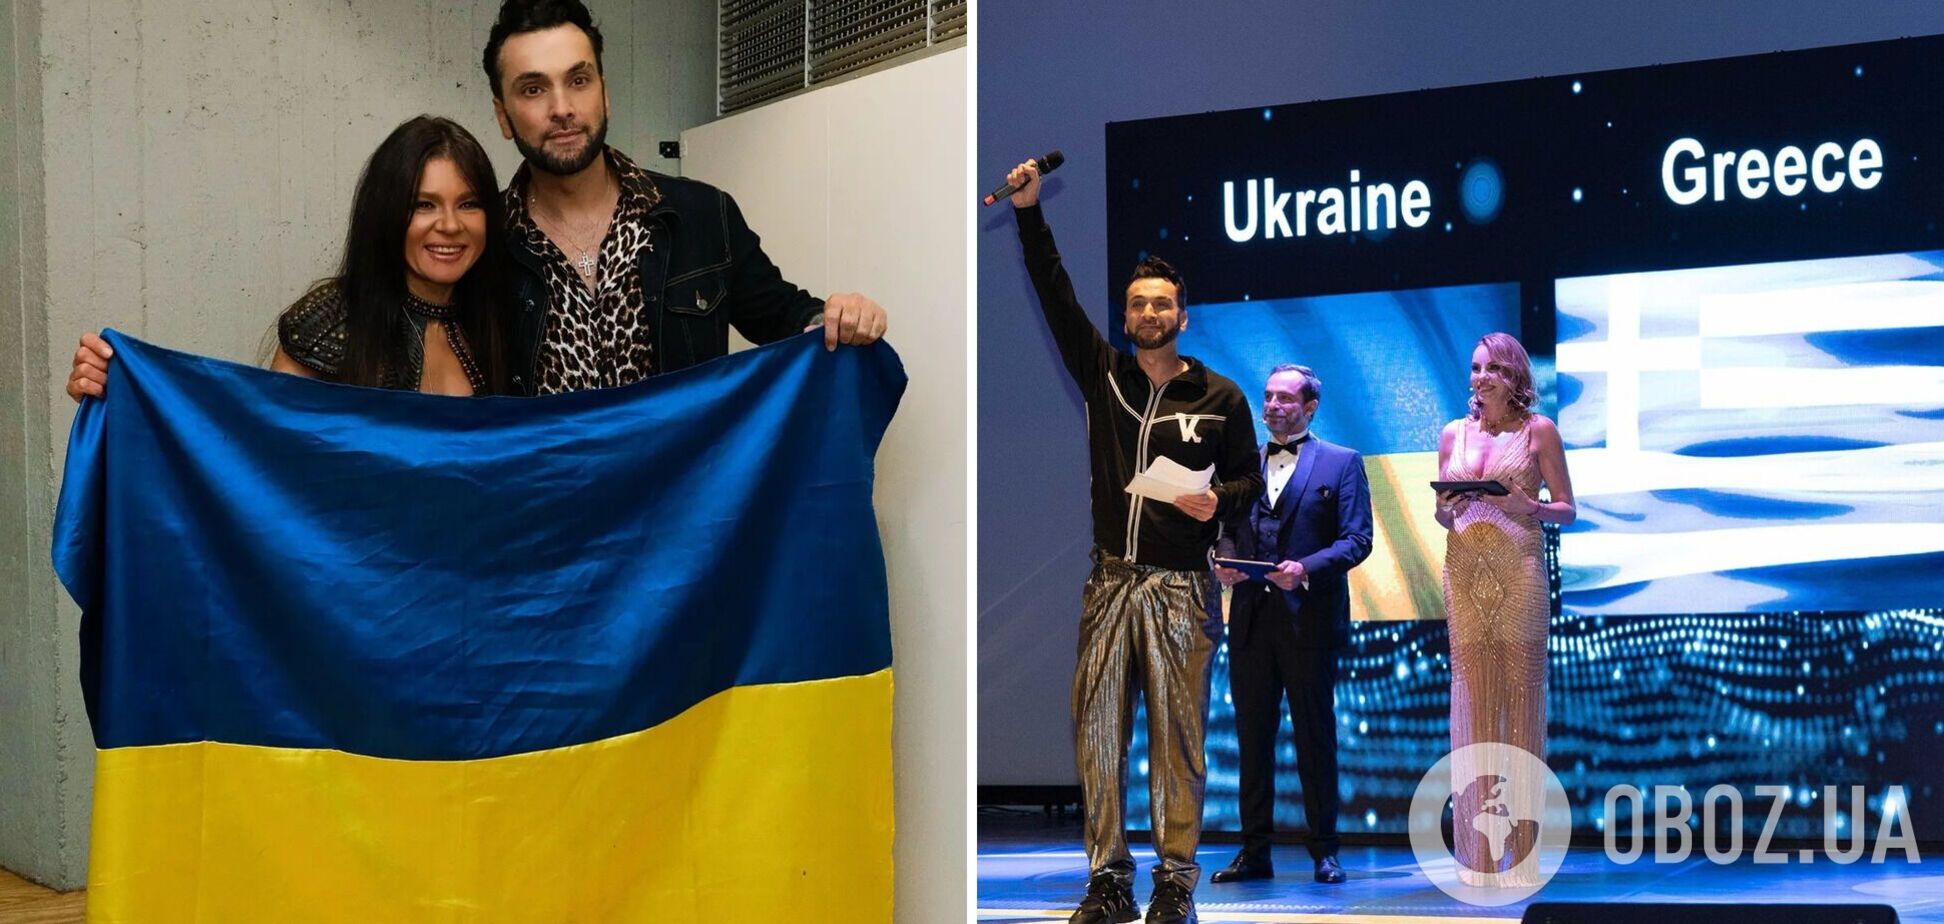 У Греції вперше провели благодійний вечір 'Beauty saves the world' на підтримку України